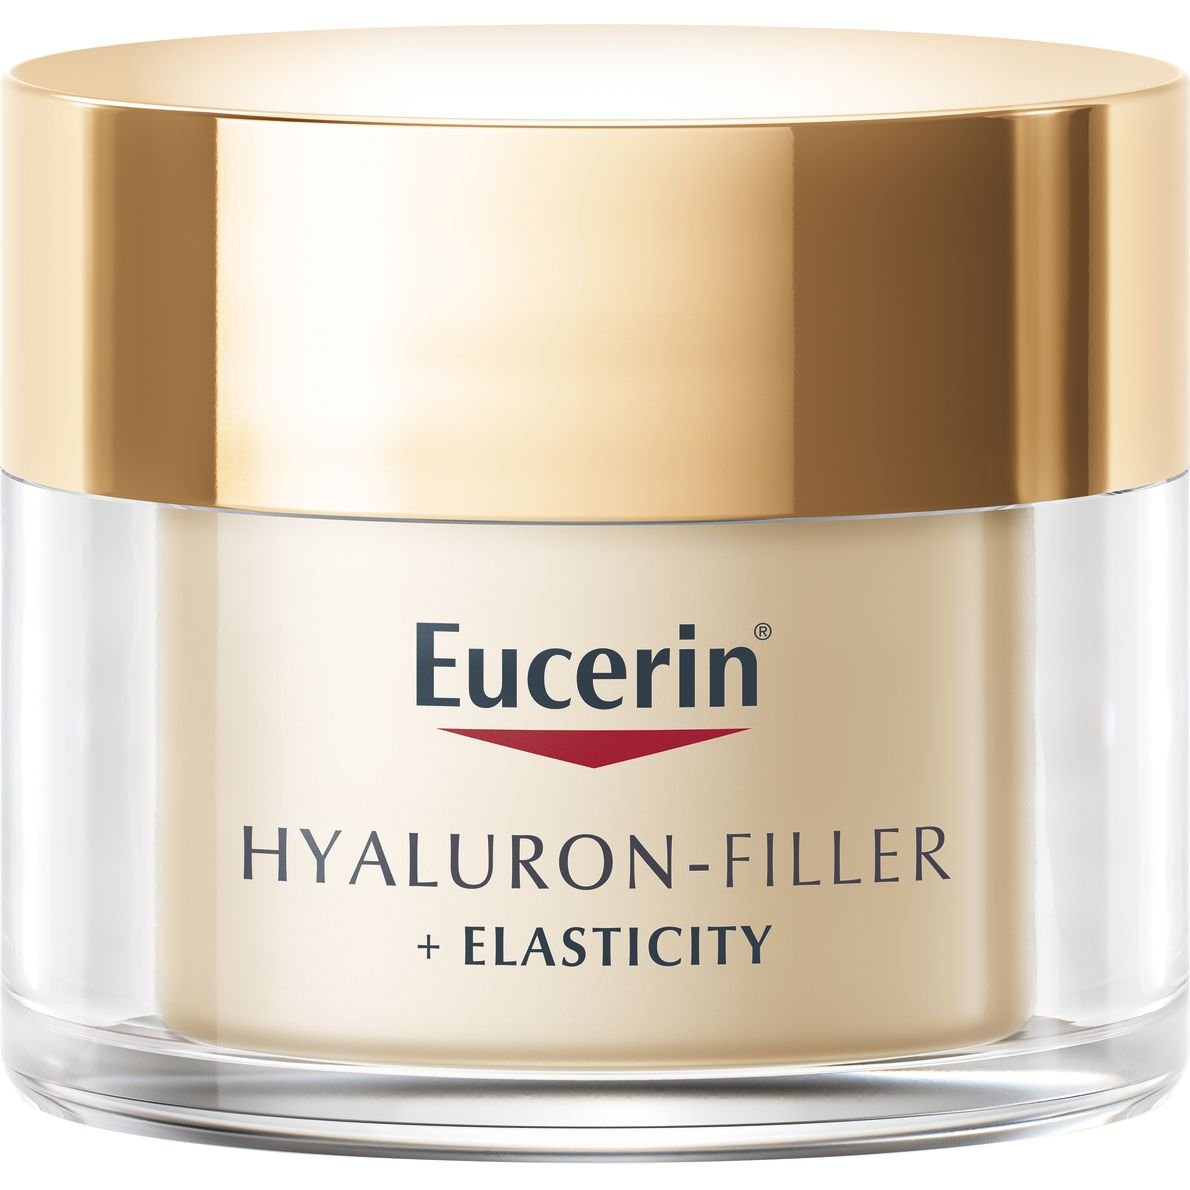 Дневной крем Eucerin Hyaluron-Filler + Elasticity SPF 30 для биоревитализации и повышения упругости кожи 50 мл - фото 1